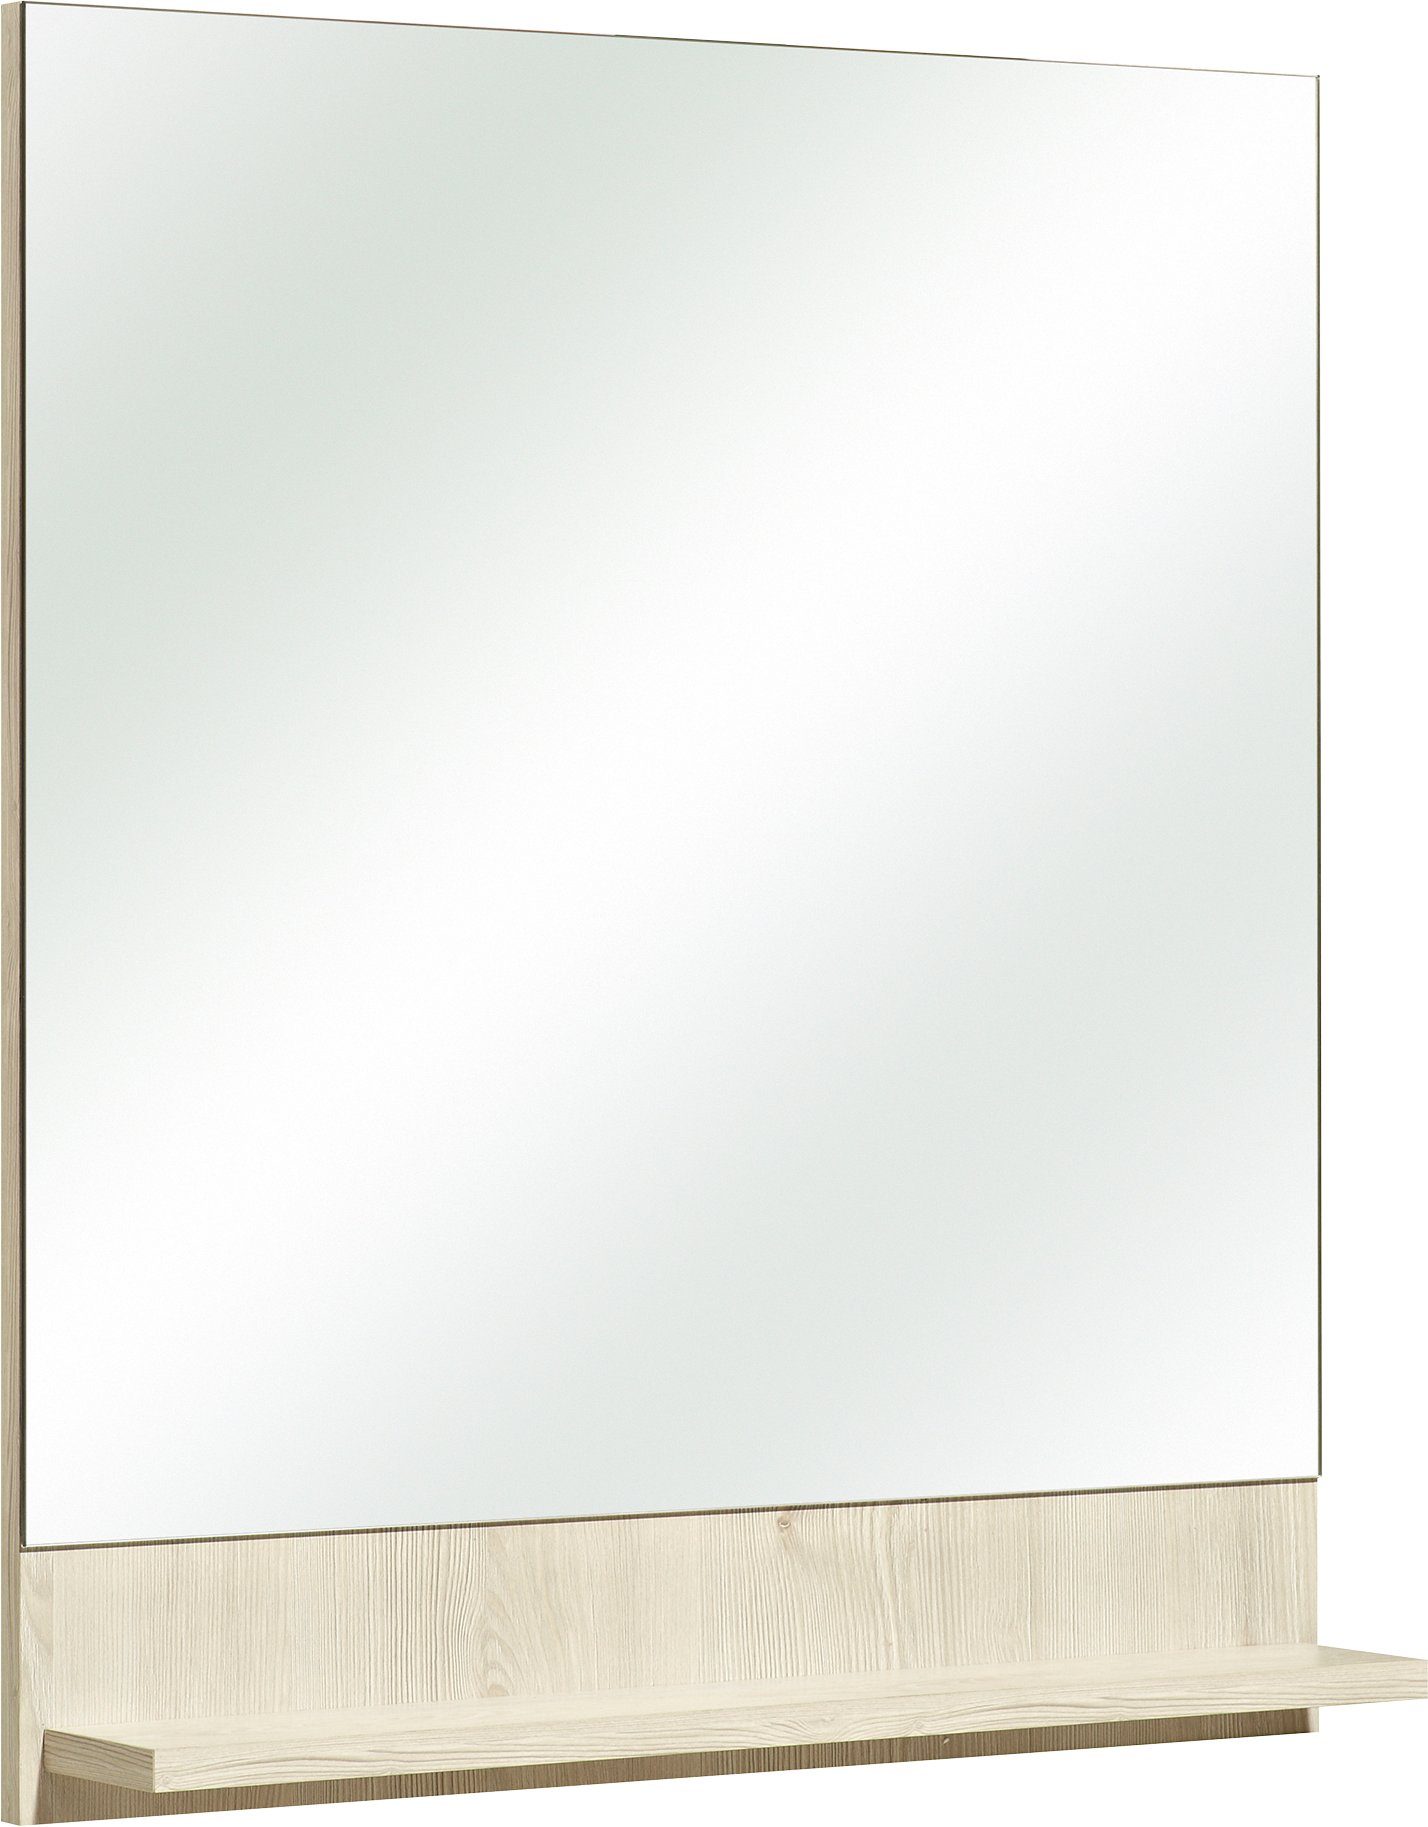 Saphir Wandspiegel Quickset 350 Flächenspiegel mit Ablage, 60 cm breit, 68 cm hoch